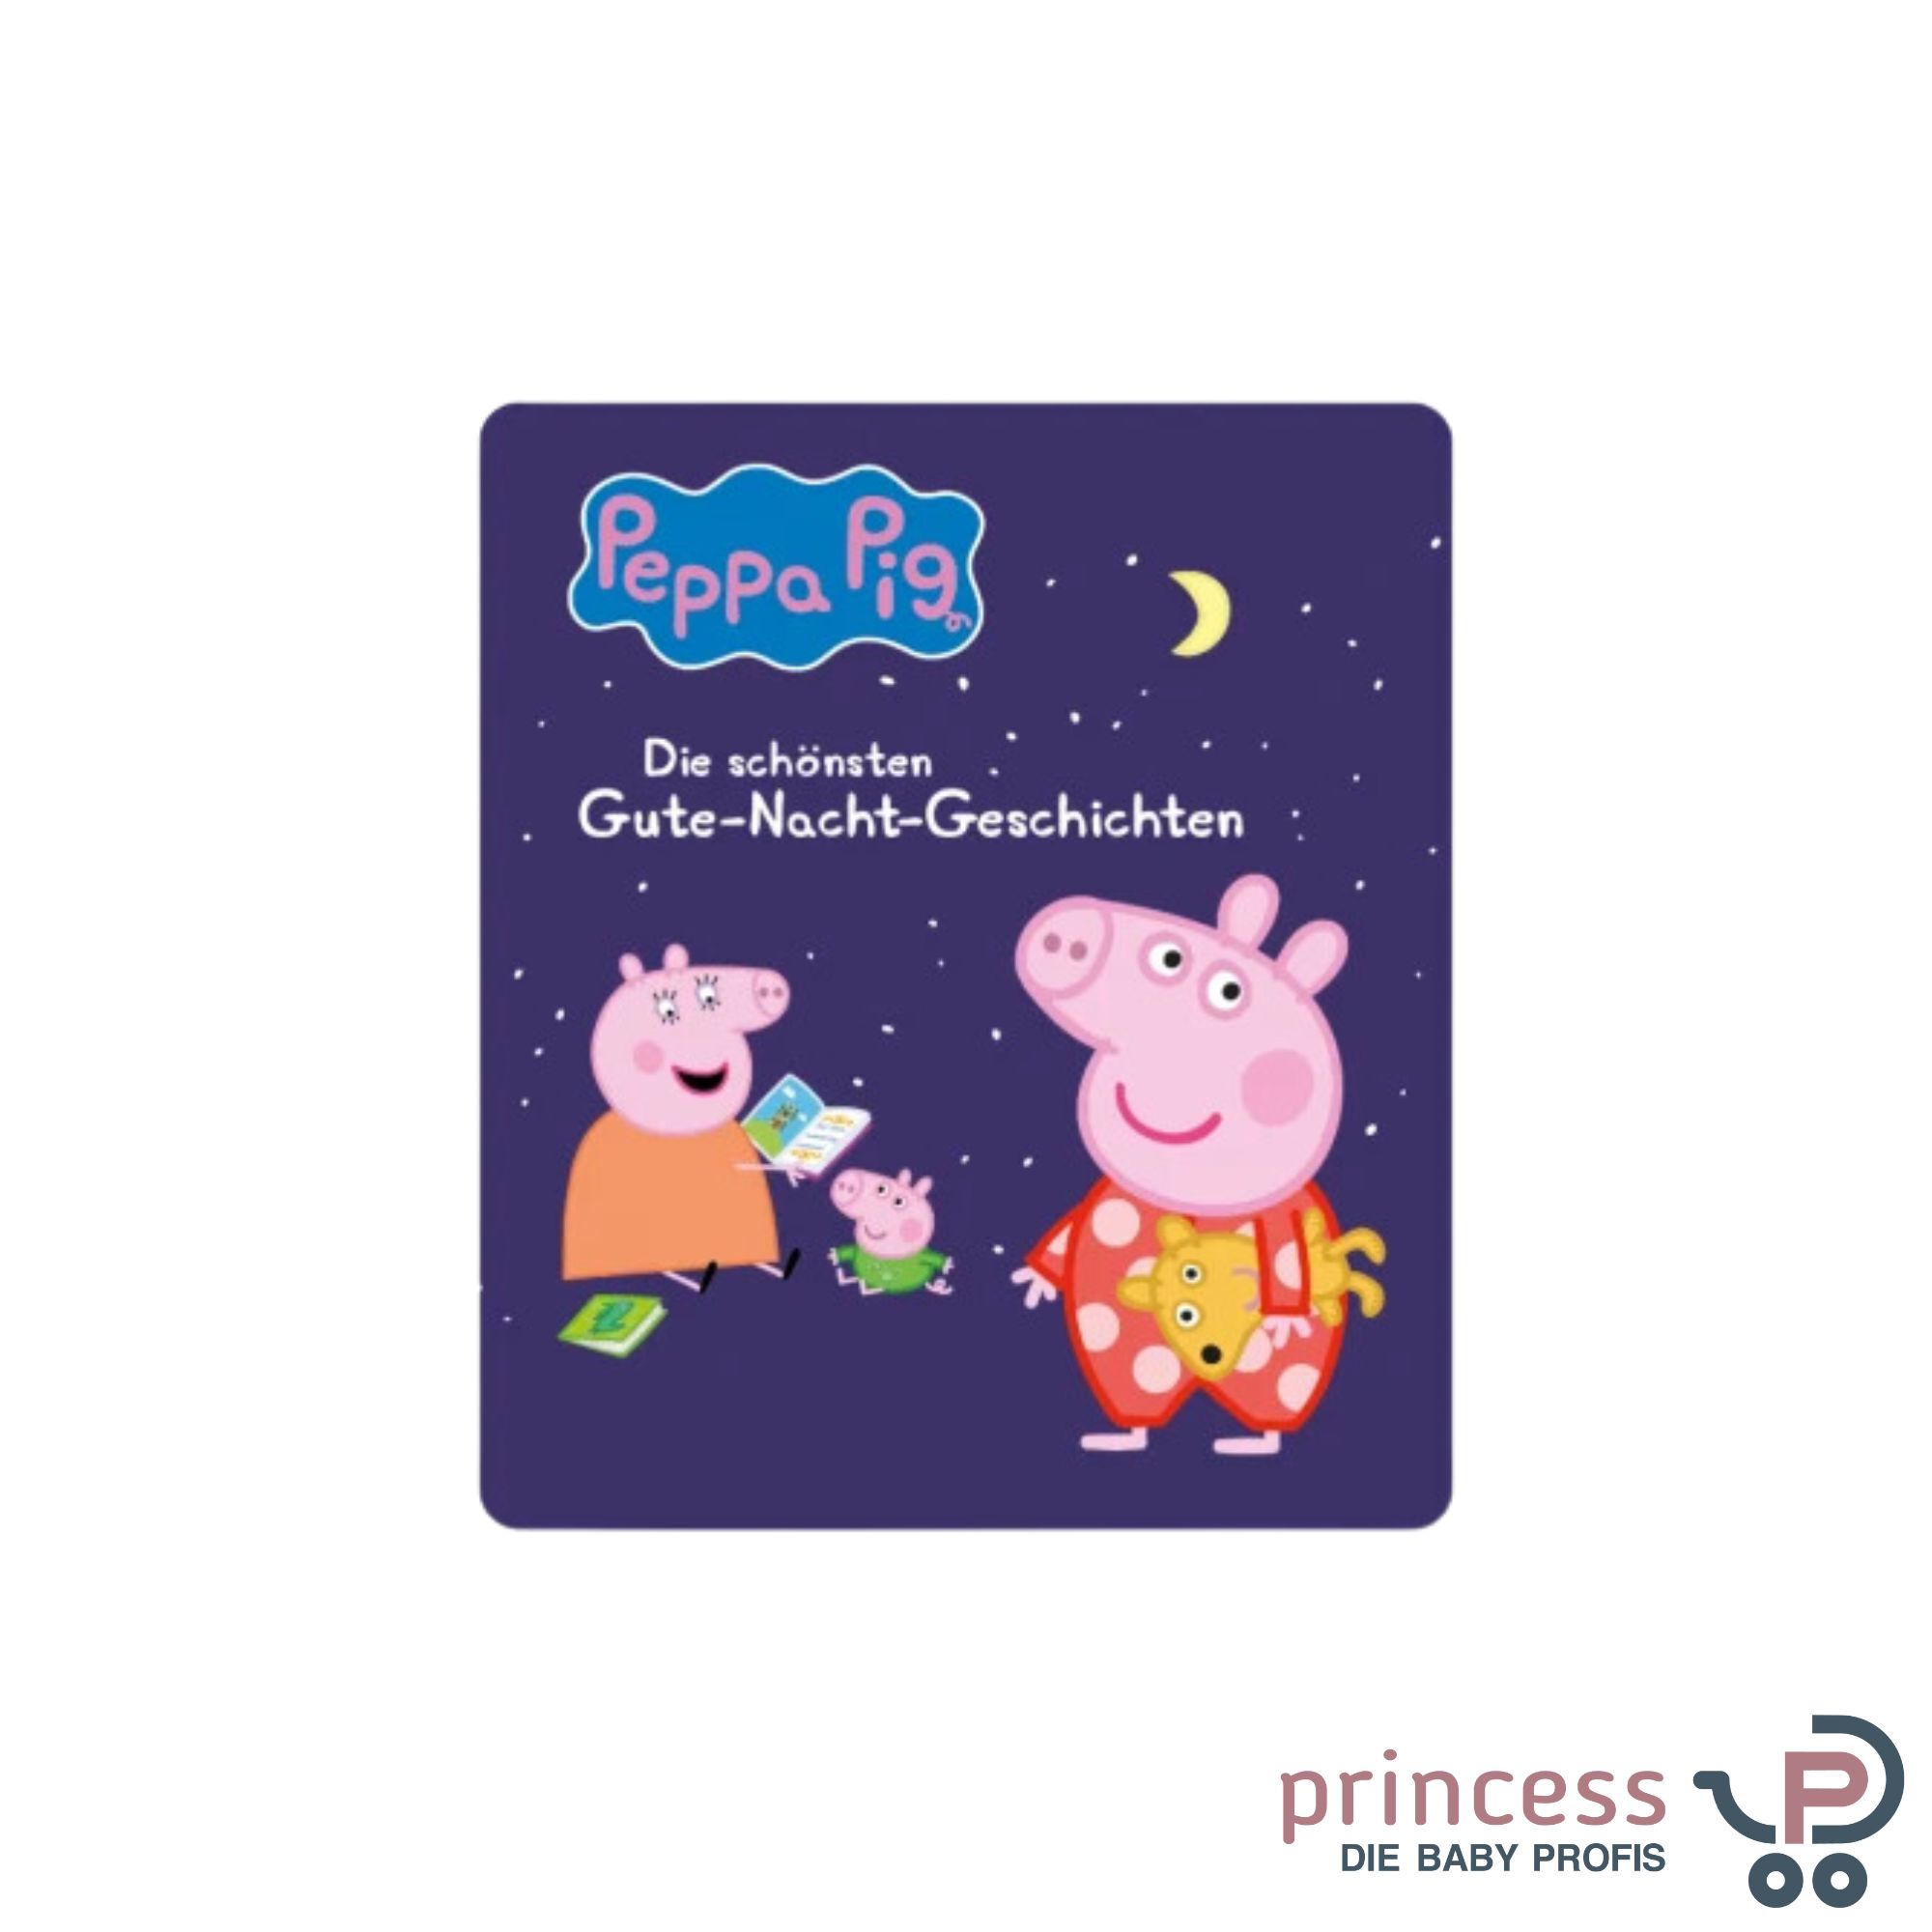 Tonies Peppa Pig - Gute Nacht Geschichten - Princess Kinderwagen Onlineshop